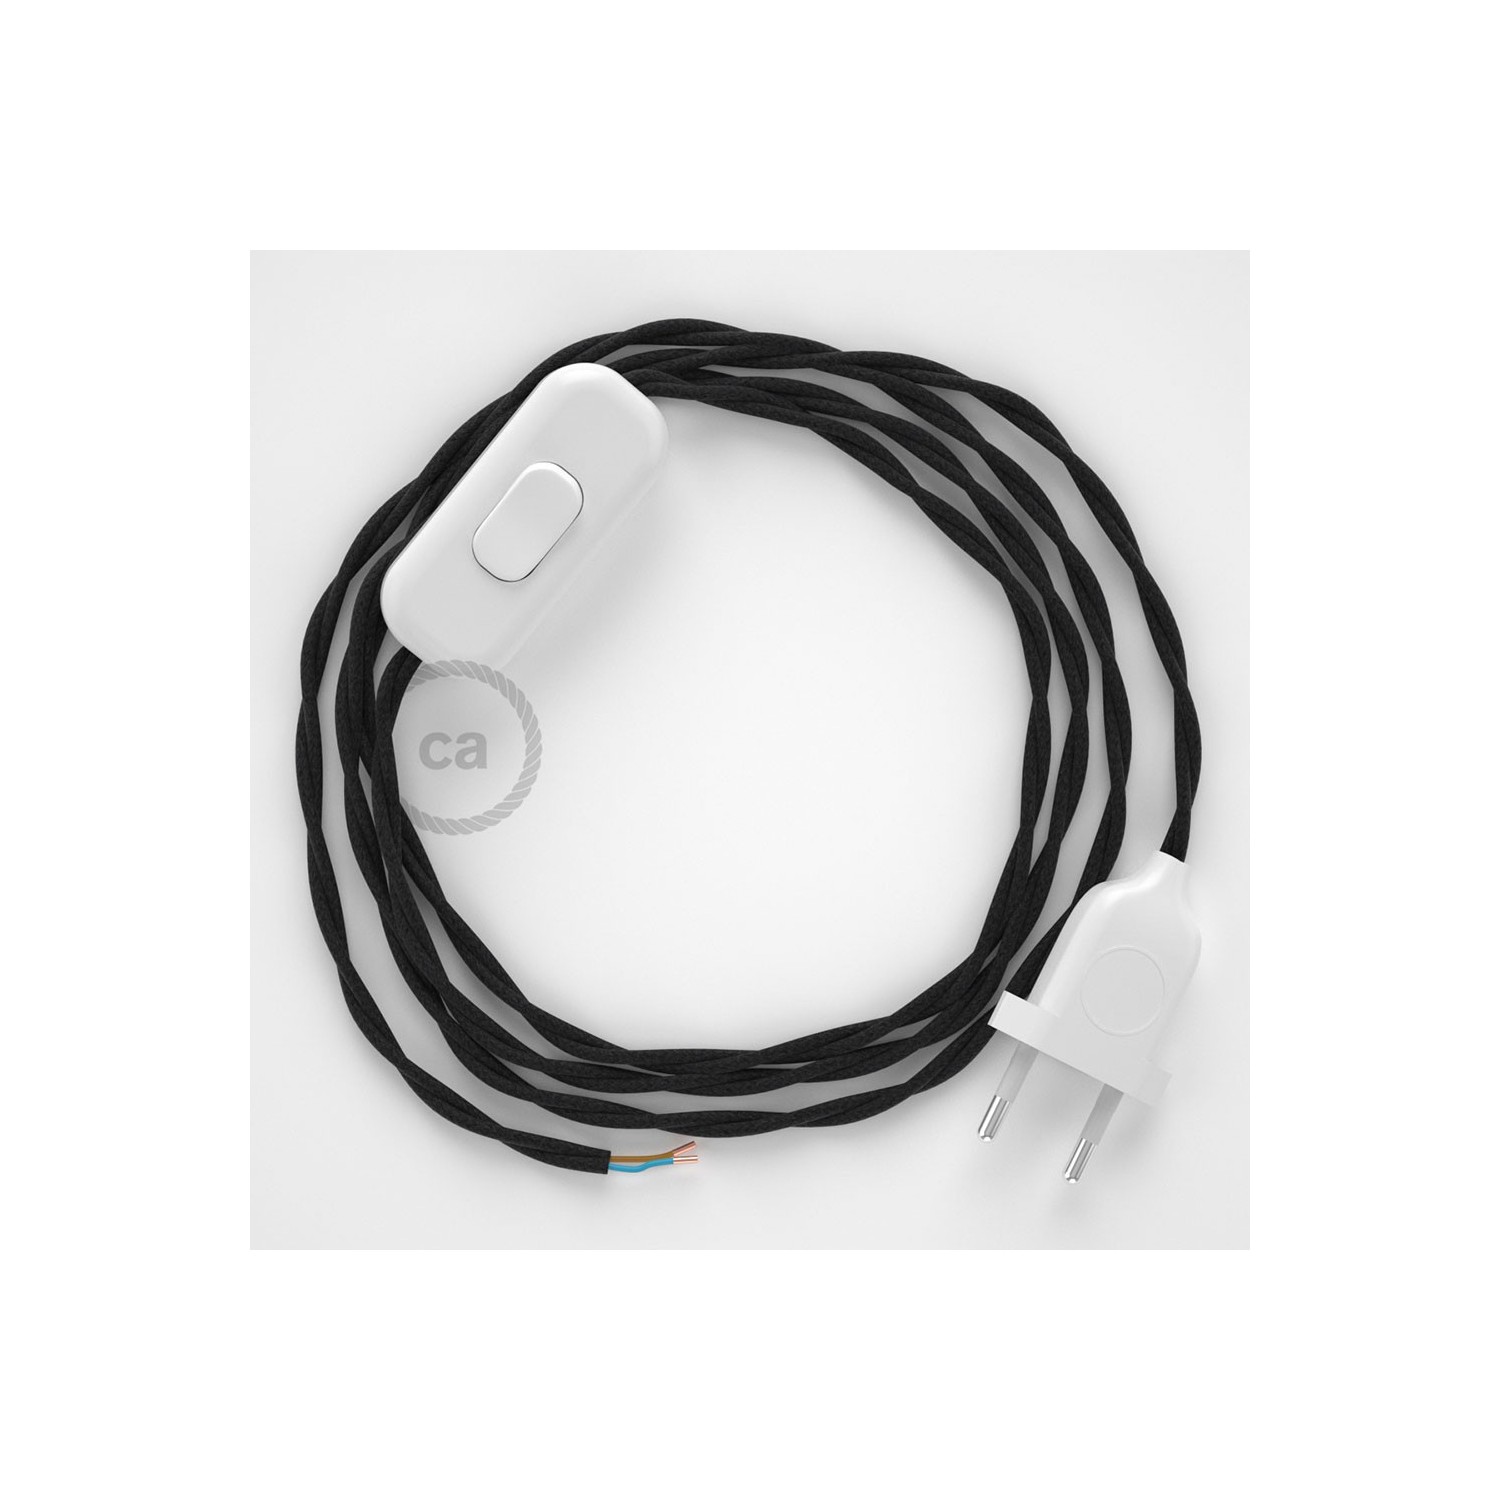 Napájecí spirálový textilní kabel 1,8m - hedváb - černý TM04. Vyberte si barvu zástrčky a vypínače.